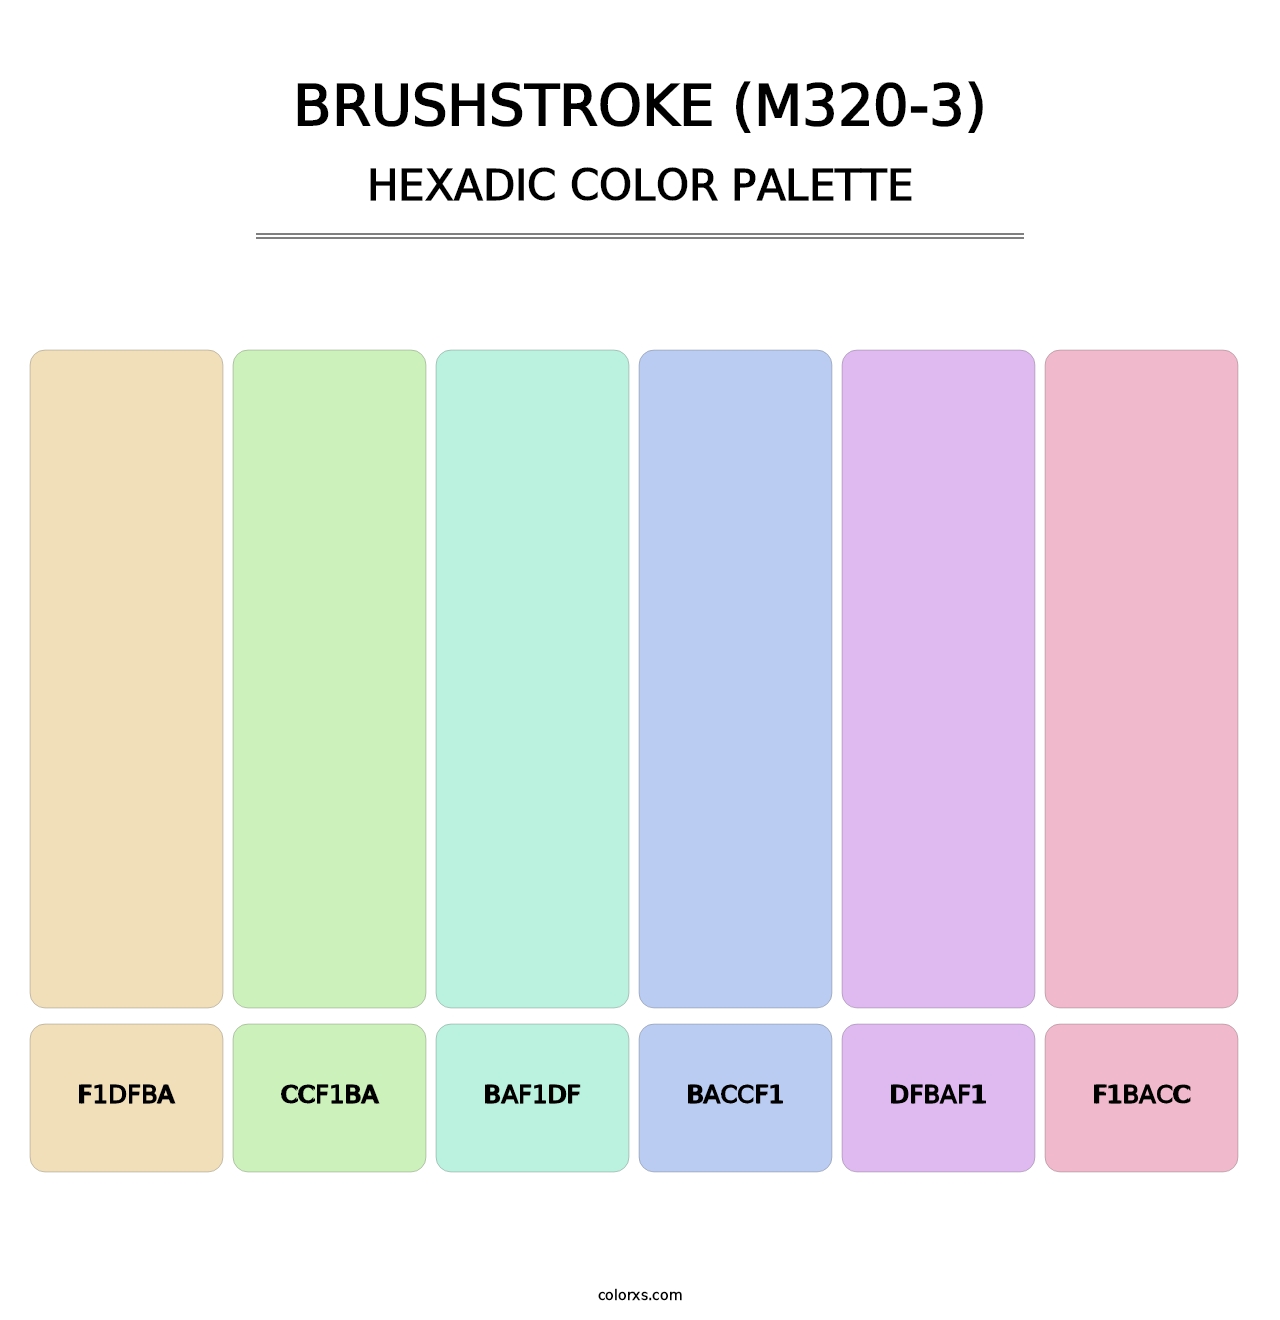 Brushstroke (M320-3) - Hexadic Color Palette